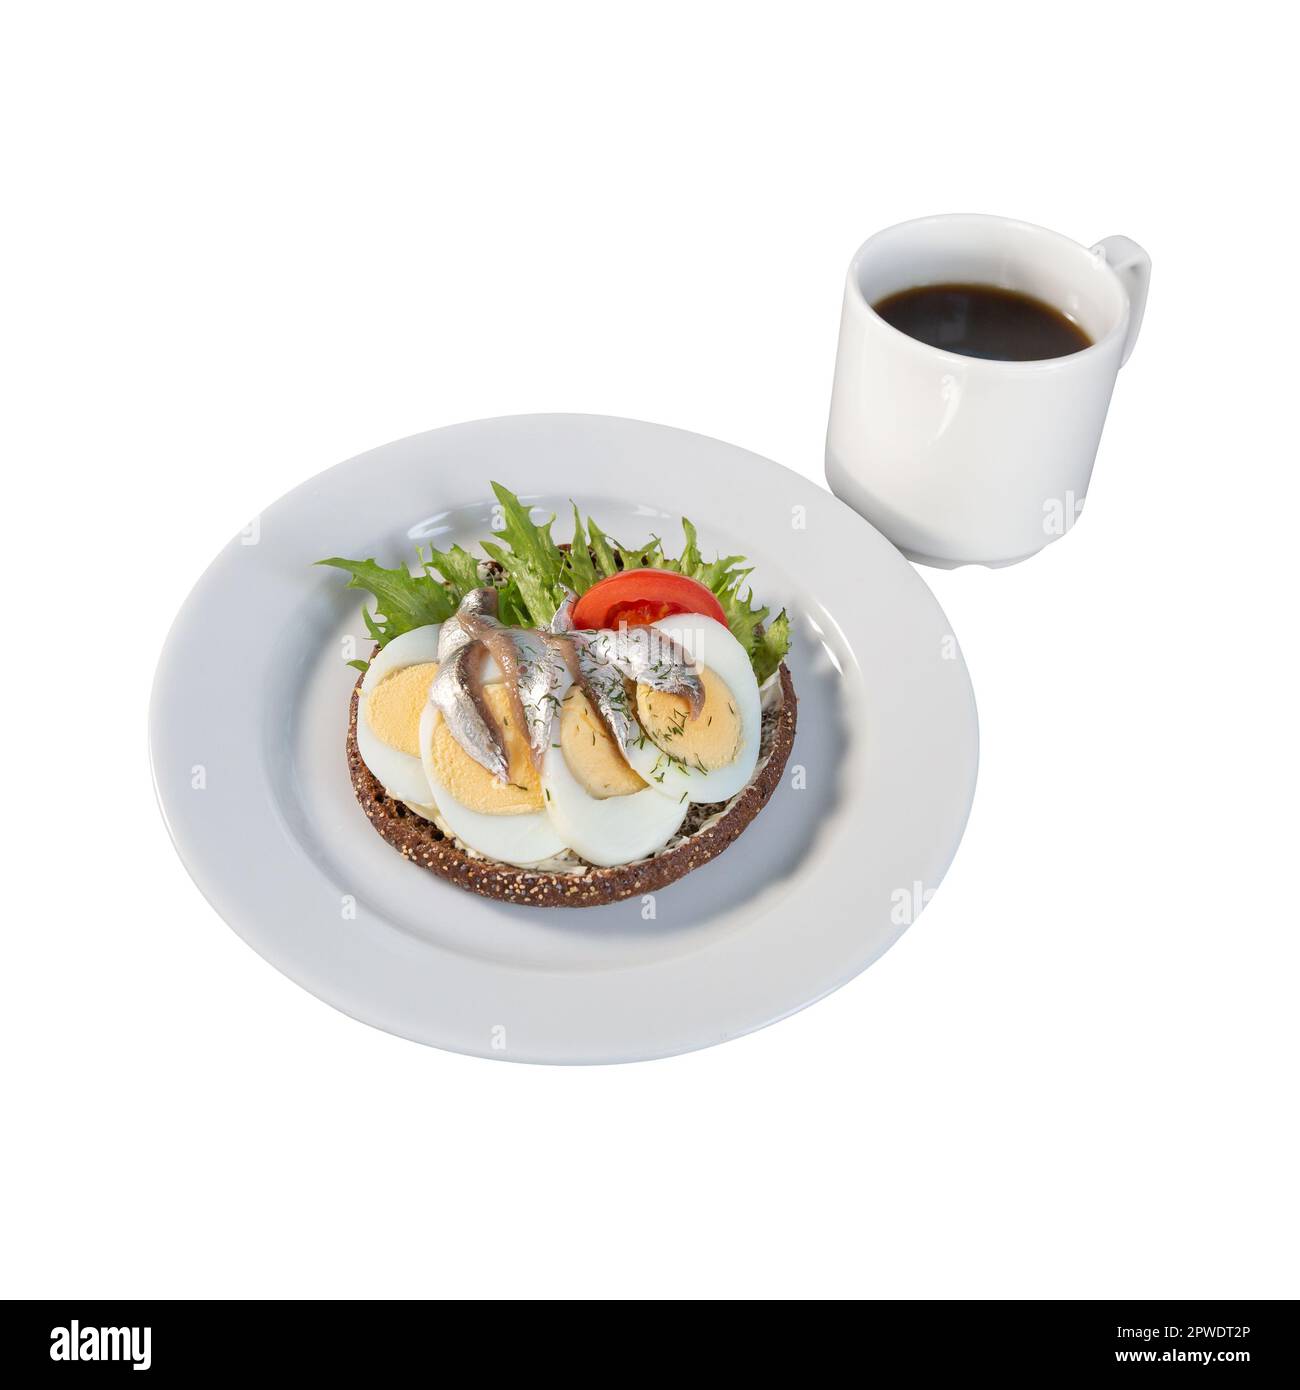 Pane di segale con acciughe, uova, verdure e una tazza di caffè su sfondo bianco. Foto Stock